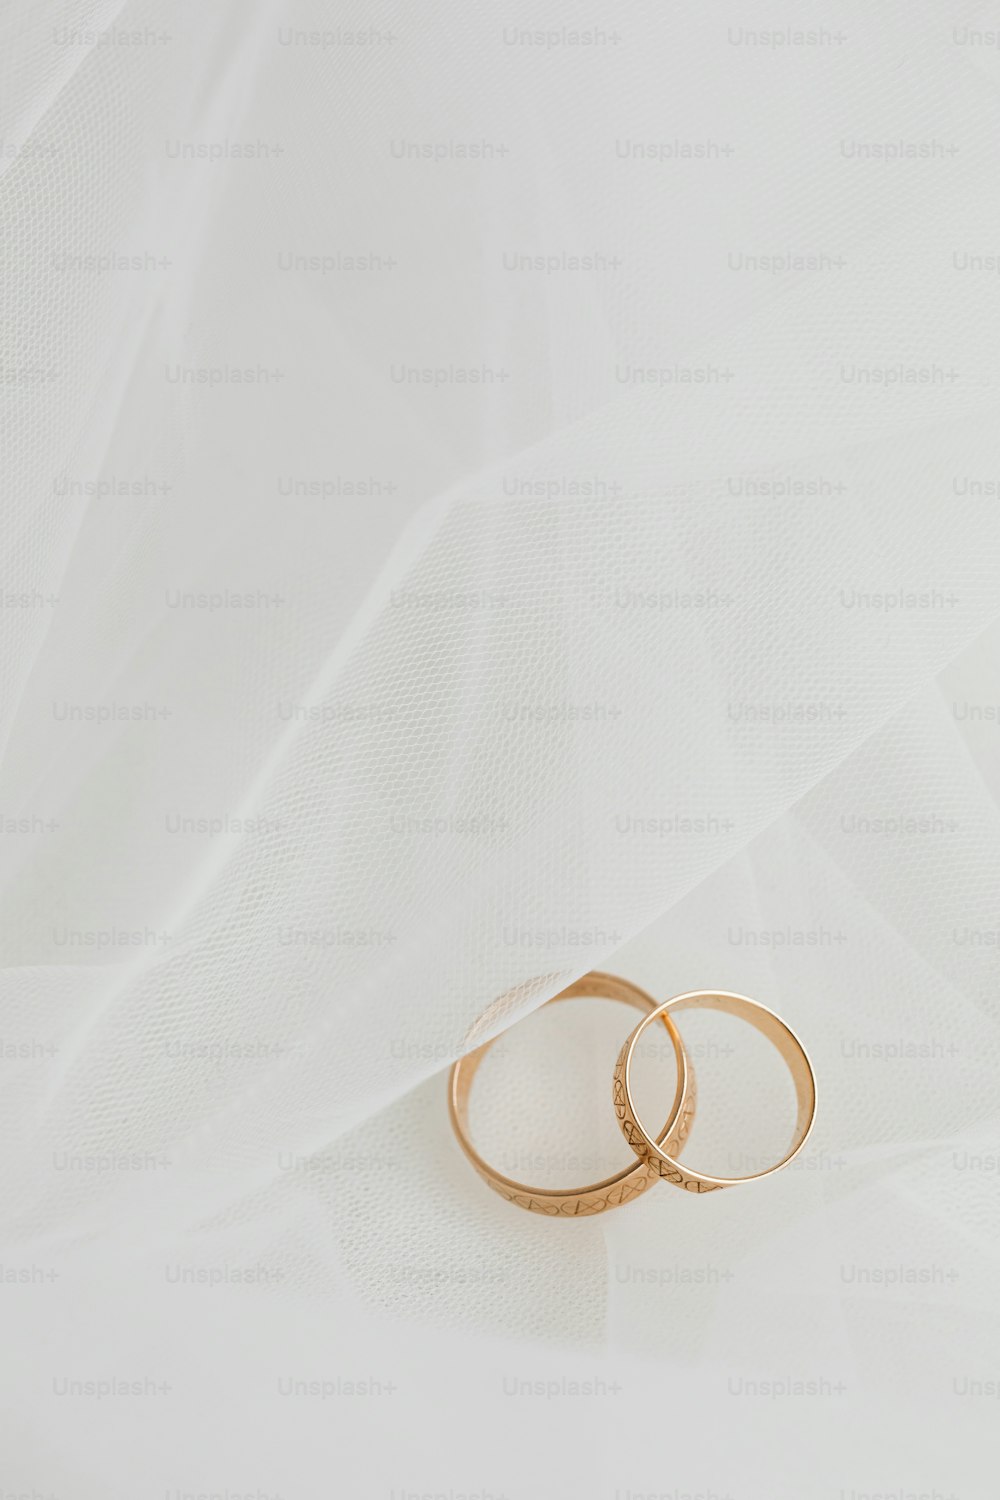 Dos anillos de boda de oro sobre fondo blanco